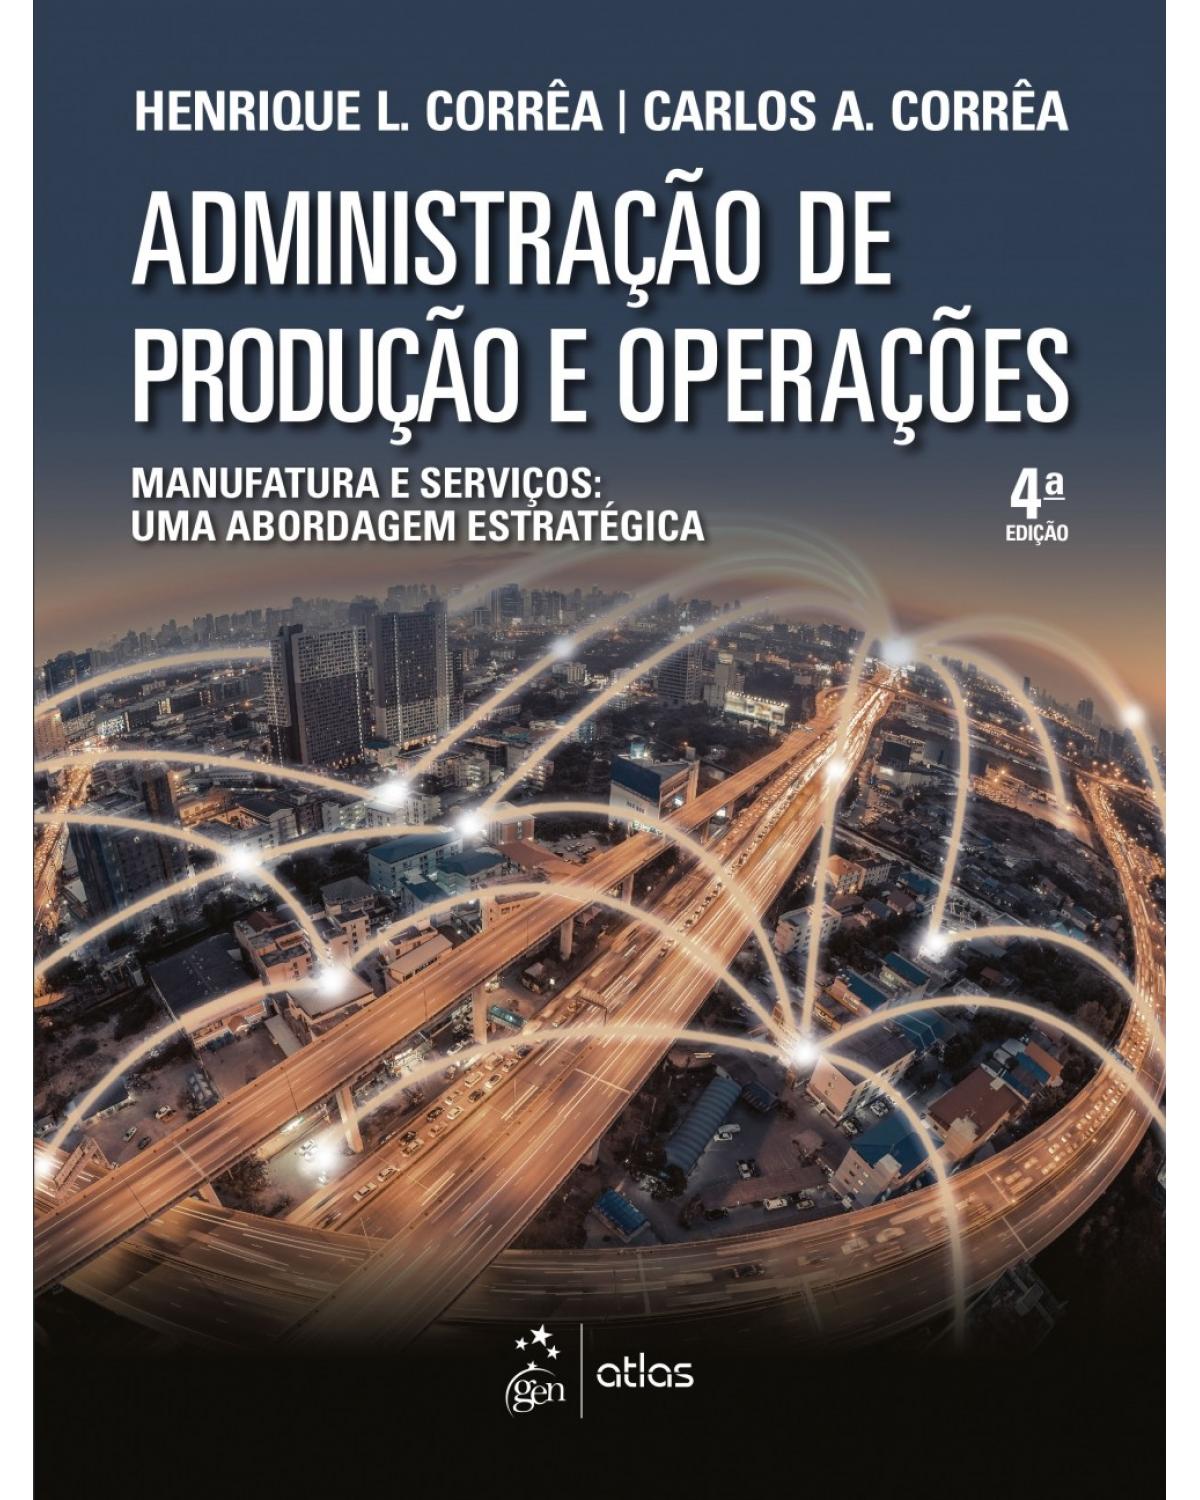 Administração de produção e operações - Manufatura e serviços: uma abordagem estratégica - 4ª Edição | 2017